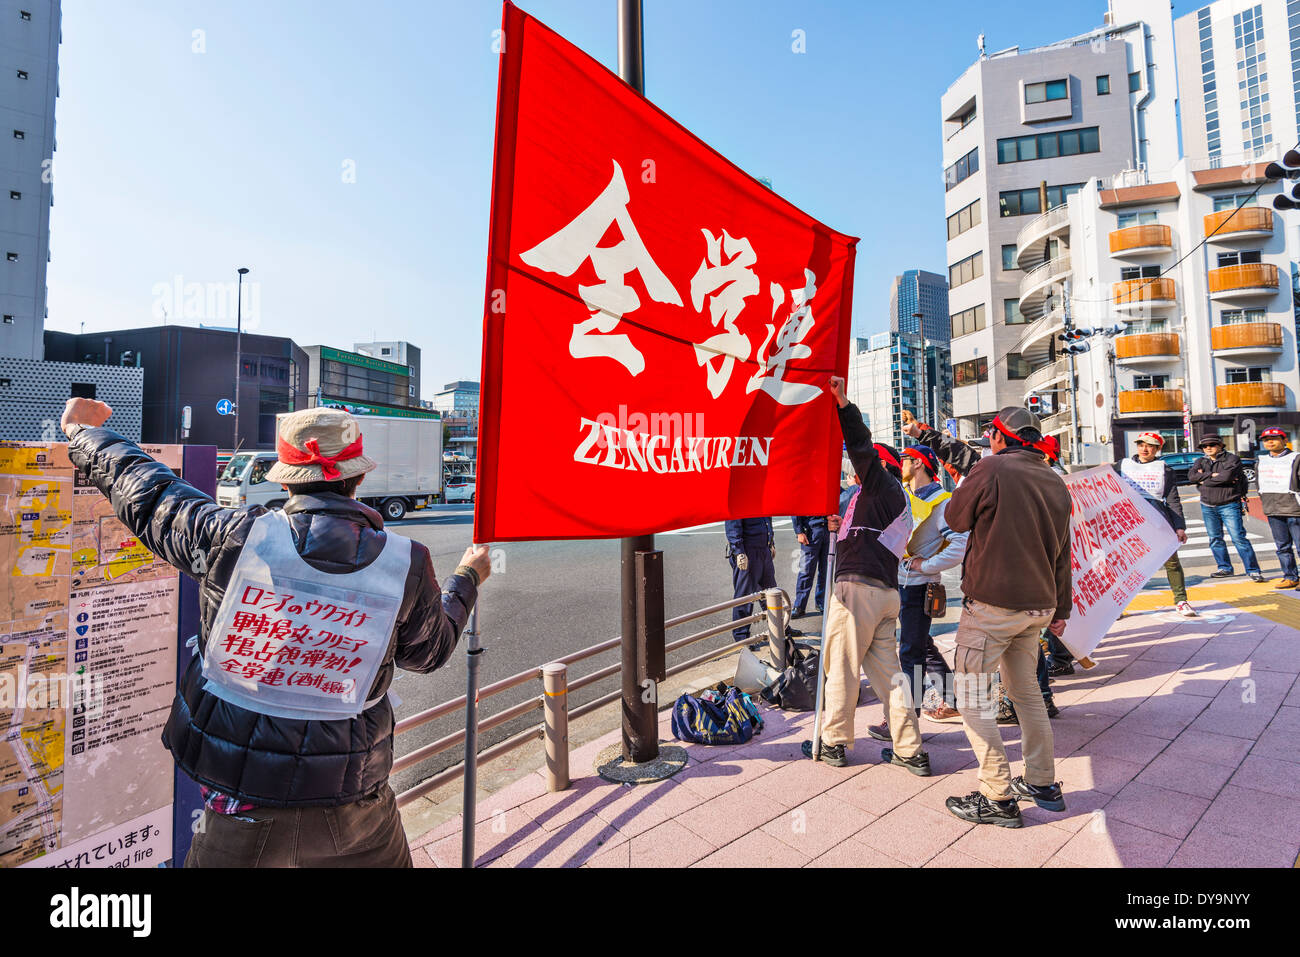 Les membres Zengakuren protester contre l'annexion de la Crimée par la Russie, à Tokyo, au Japon. Banque D'Images